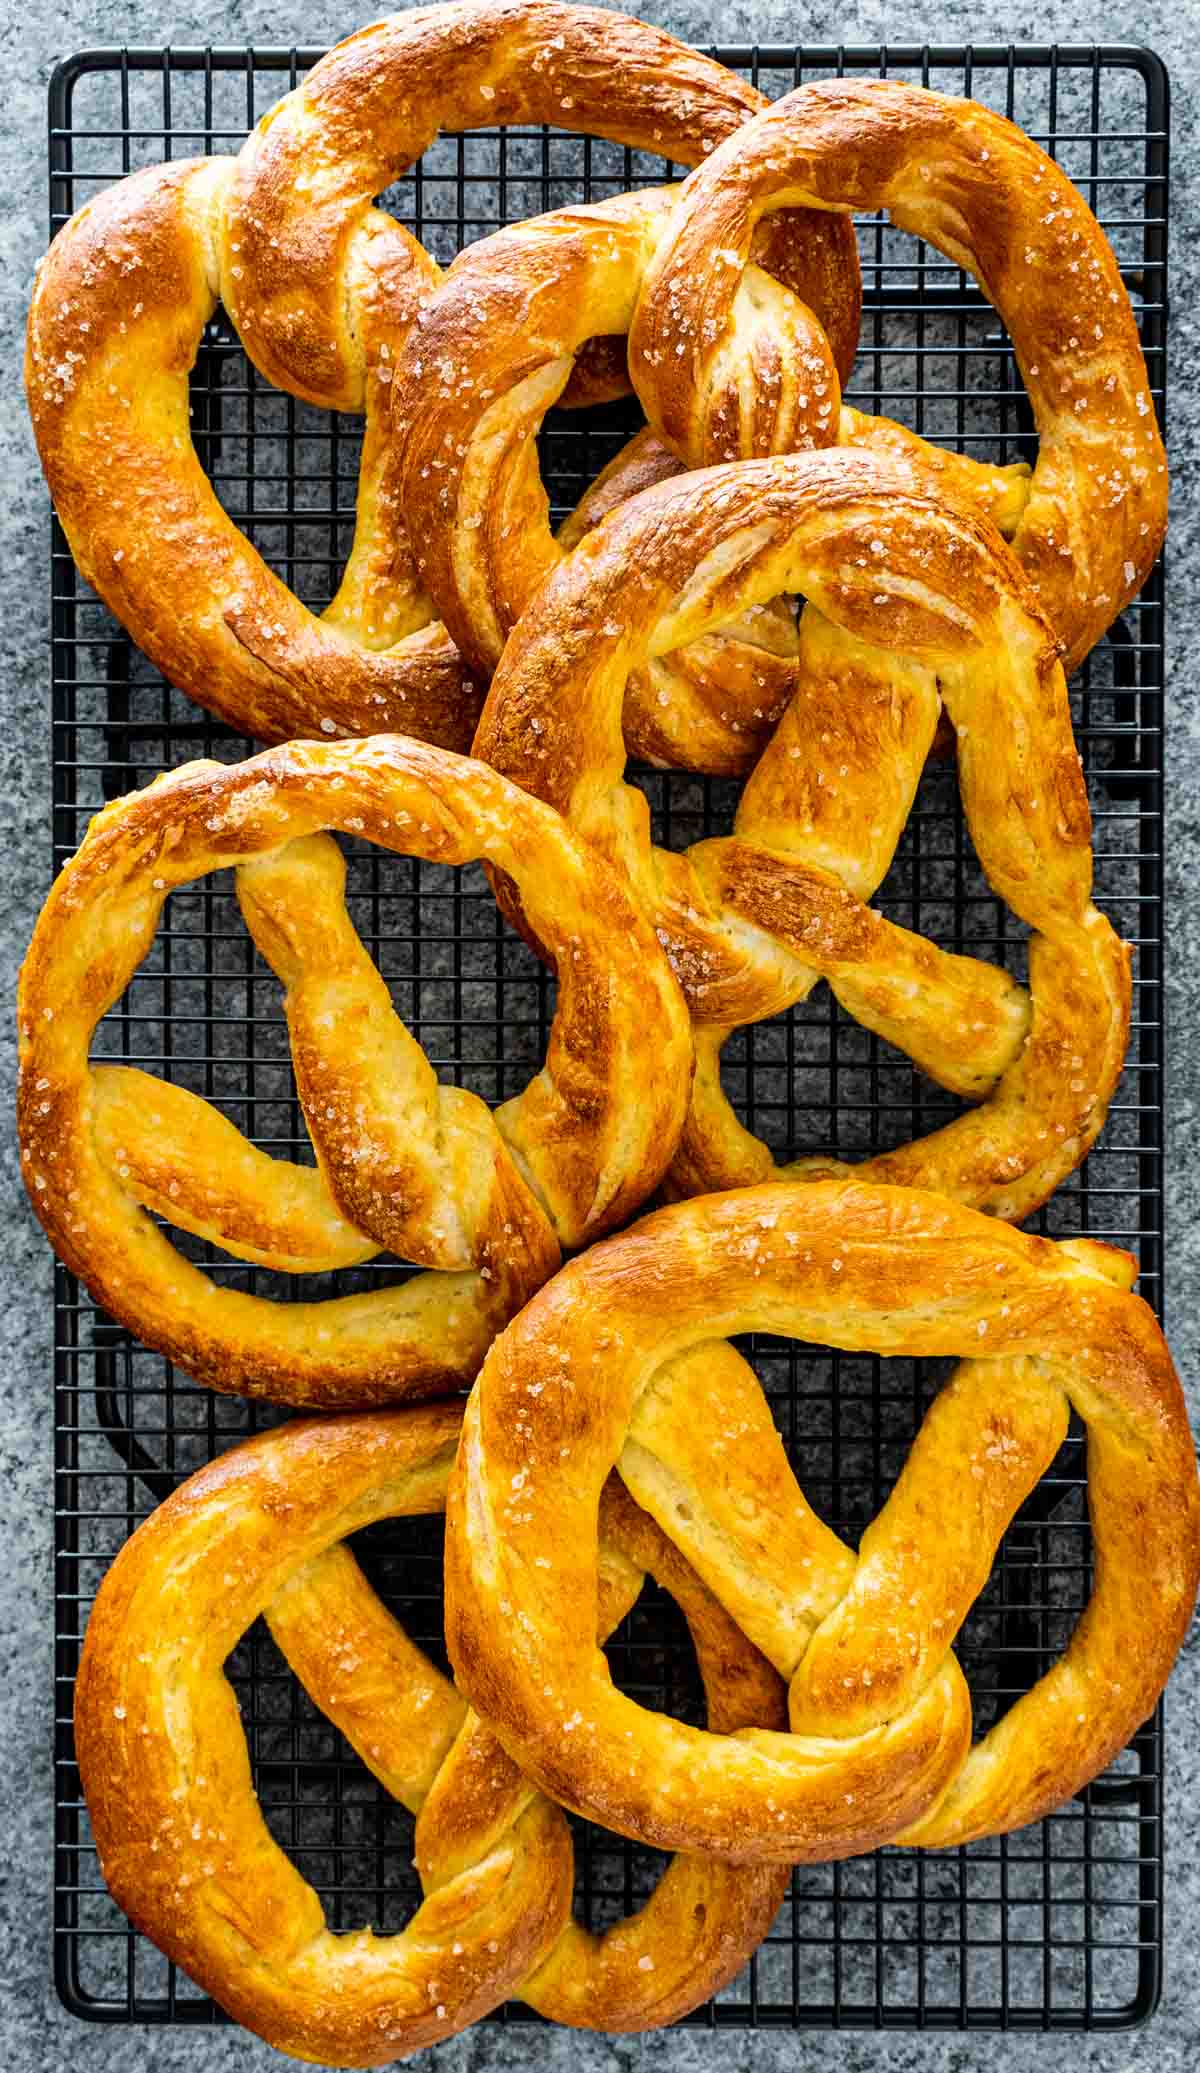 freshly baked soft pretzels cooling on cooling rack.